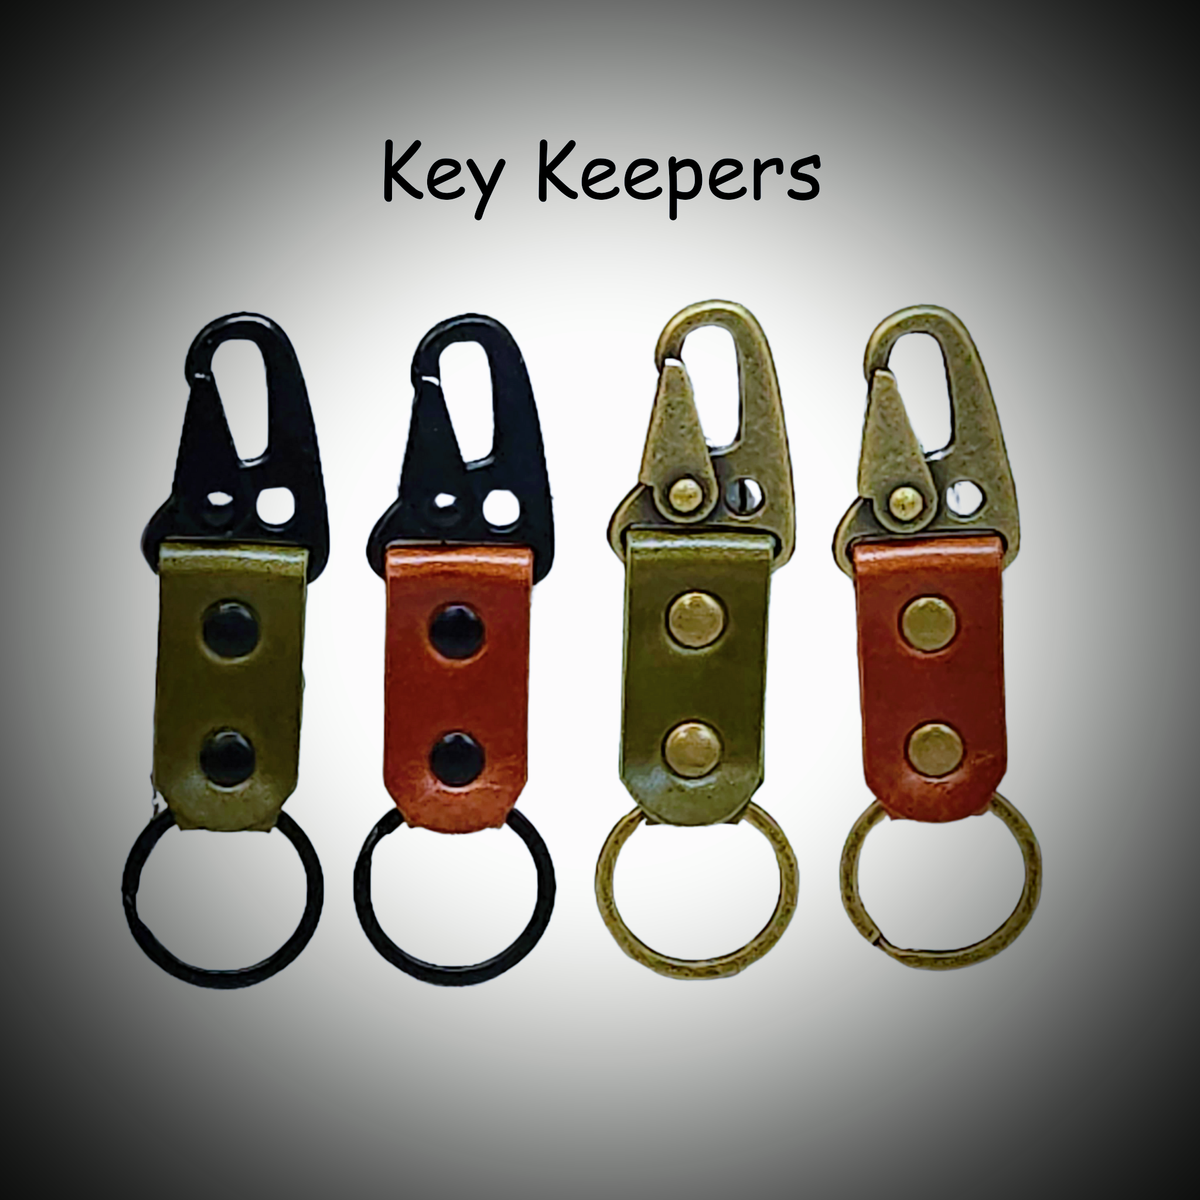 Key Keepers